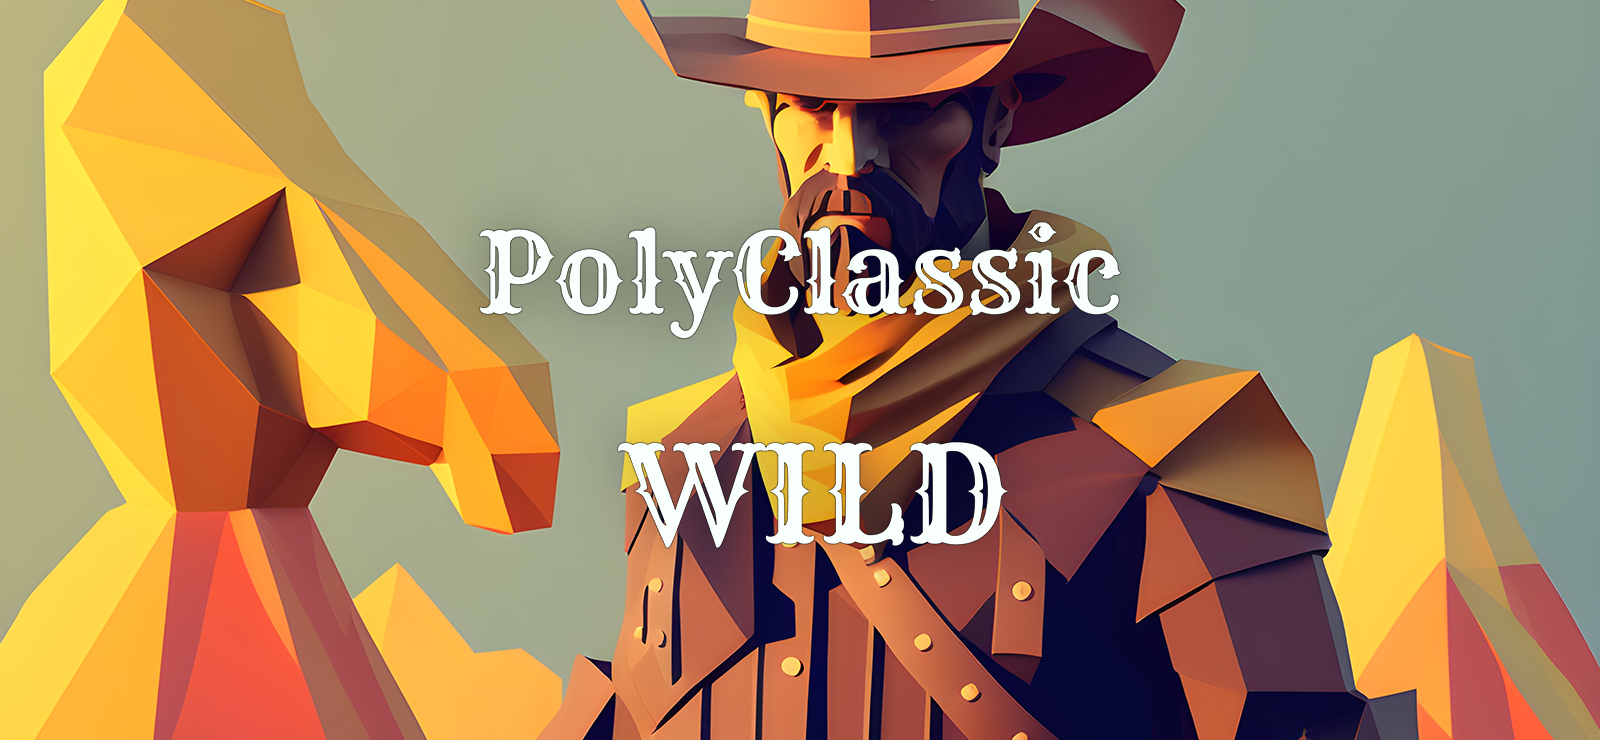 PolyClassic: Wild